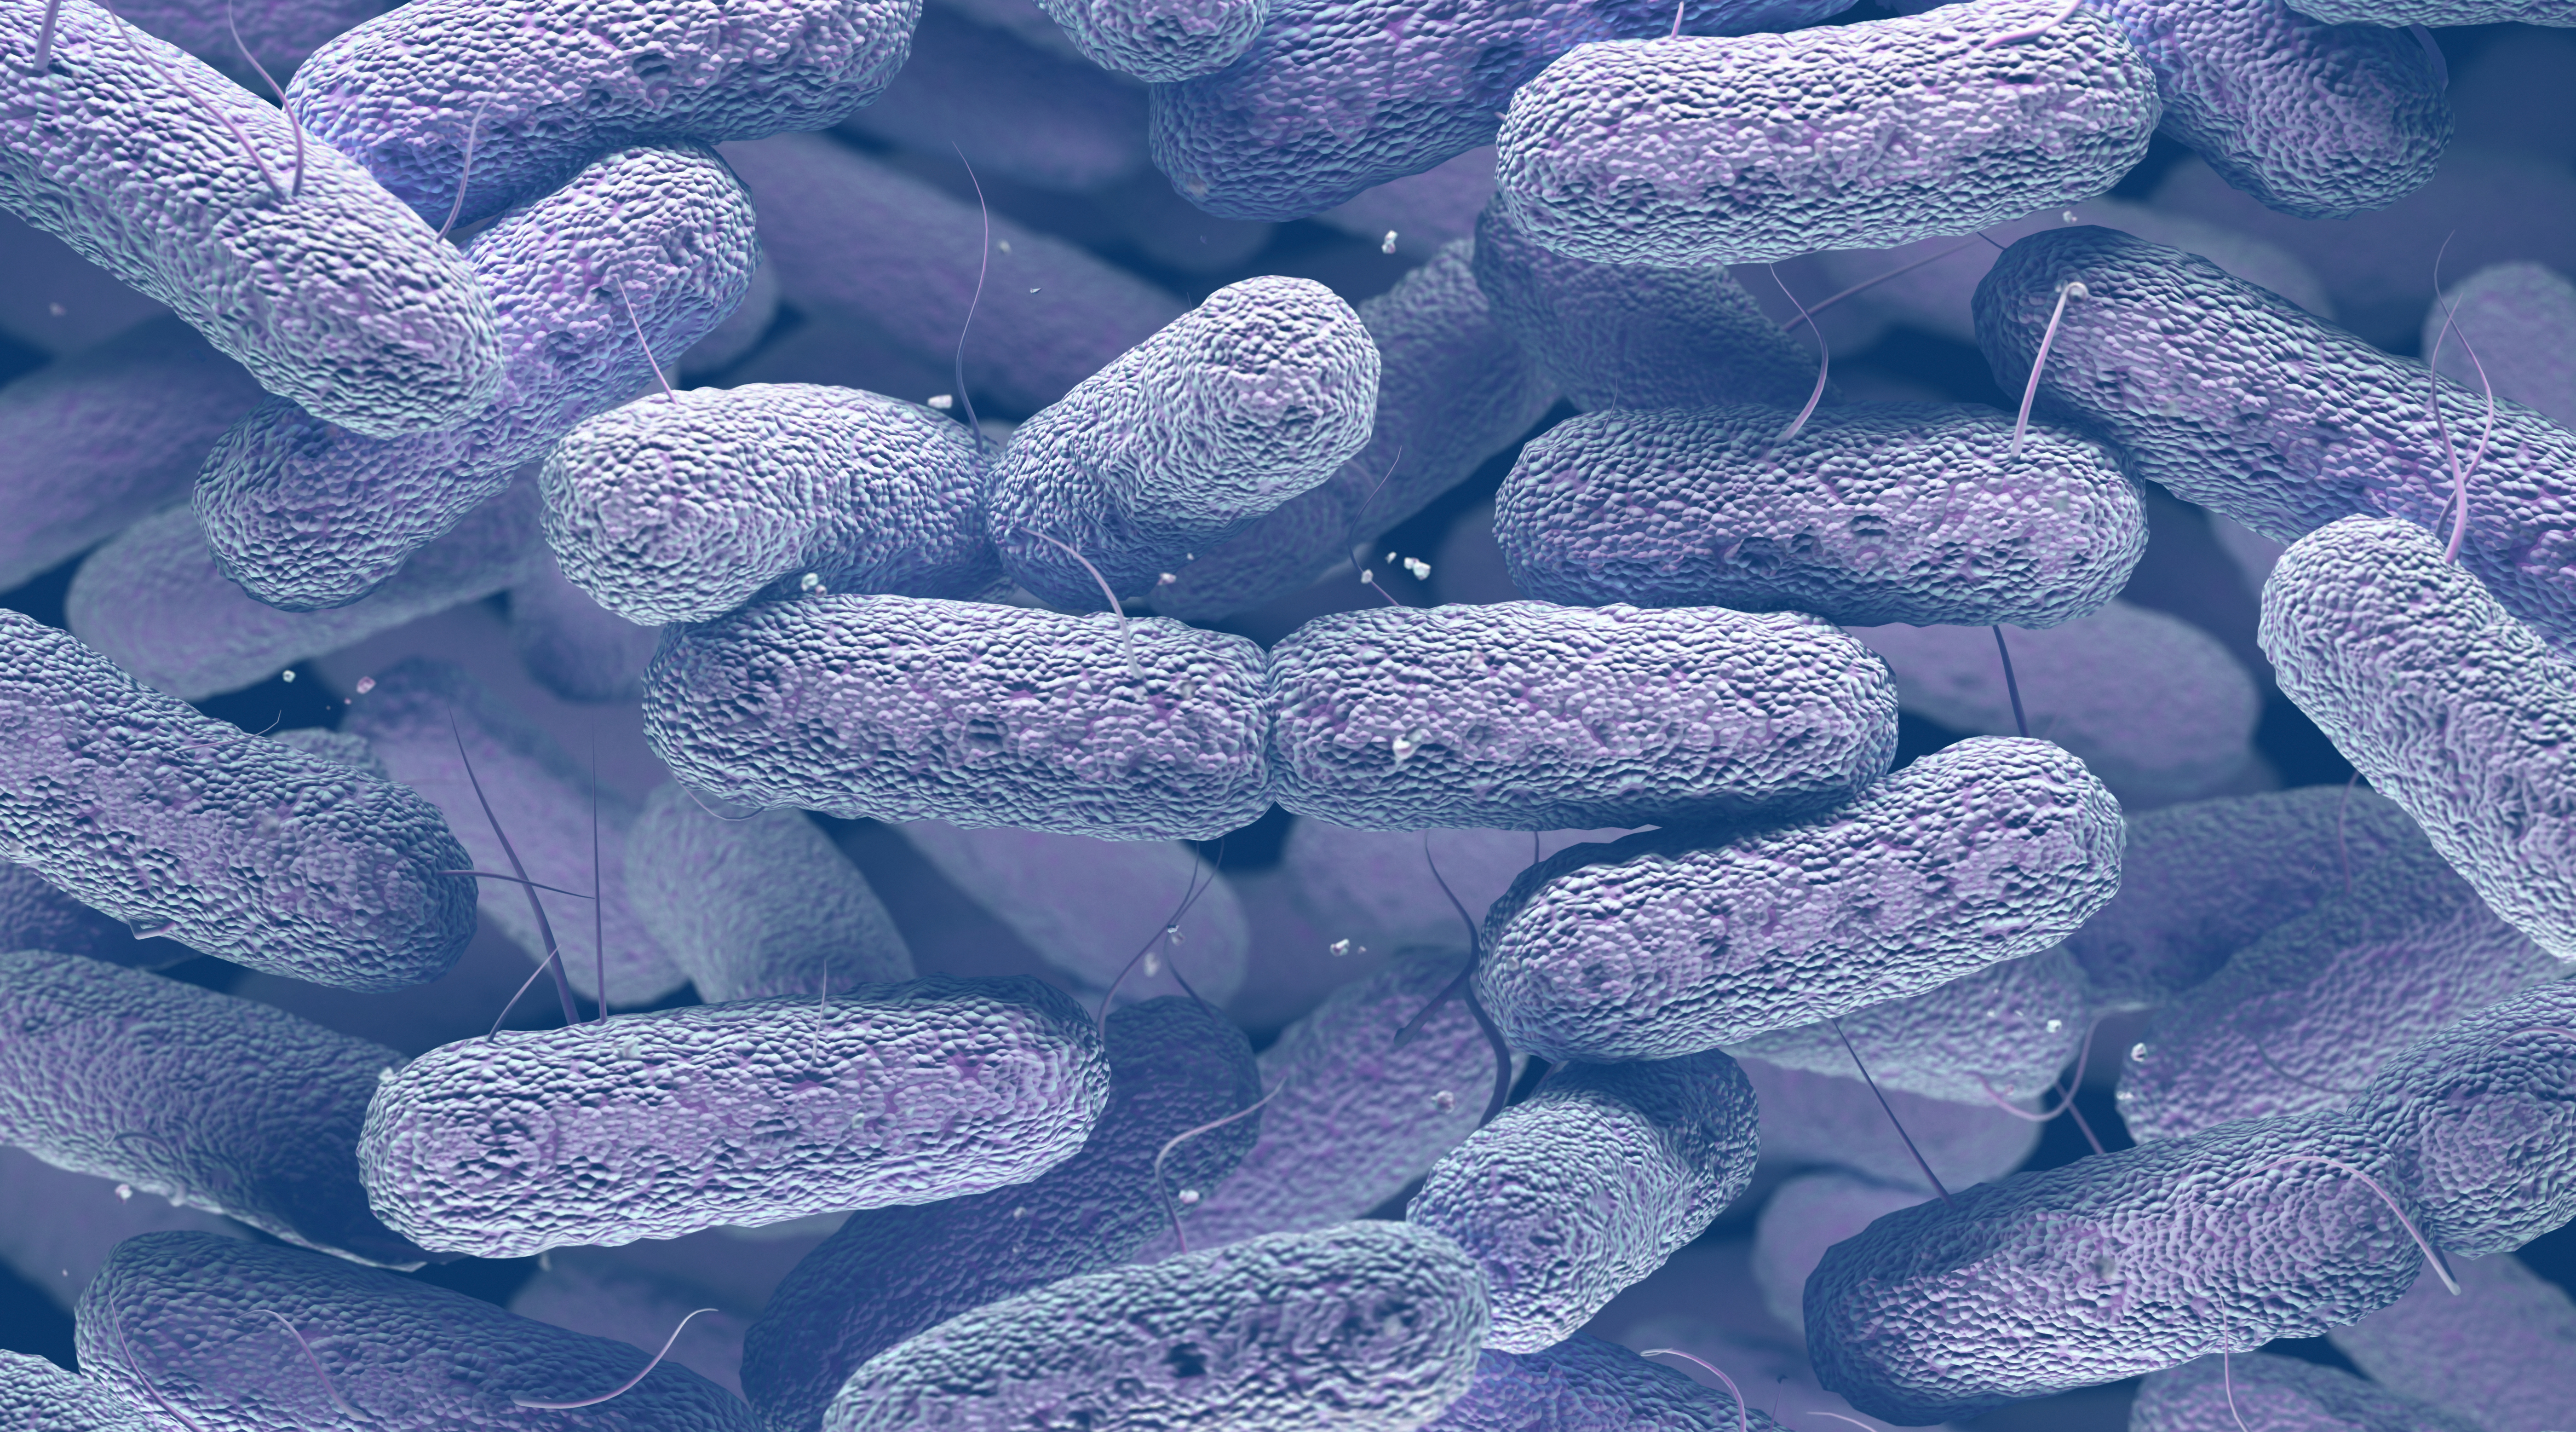 Микробиологические на аэробные микроорганизмы. Бактерия клебсиелла. Бактерии семейства Enterobacteriaceae. Klebsiella pneumoniae под микроскопом. Диплобацилла Фридлендера.